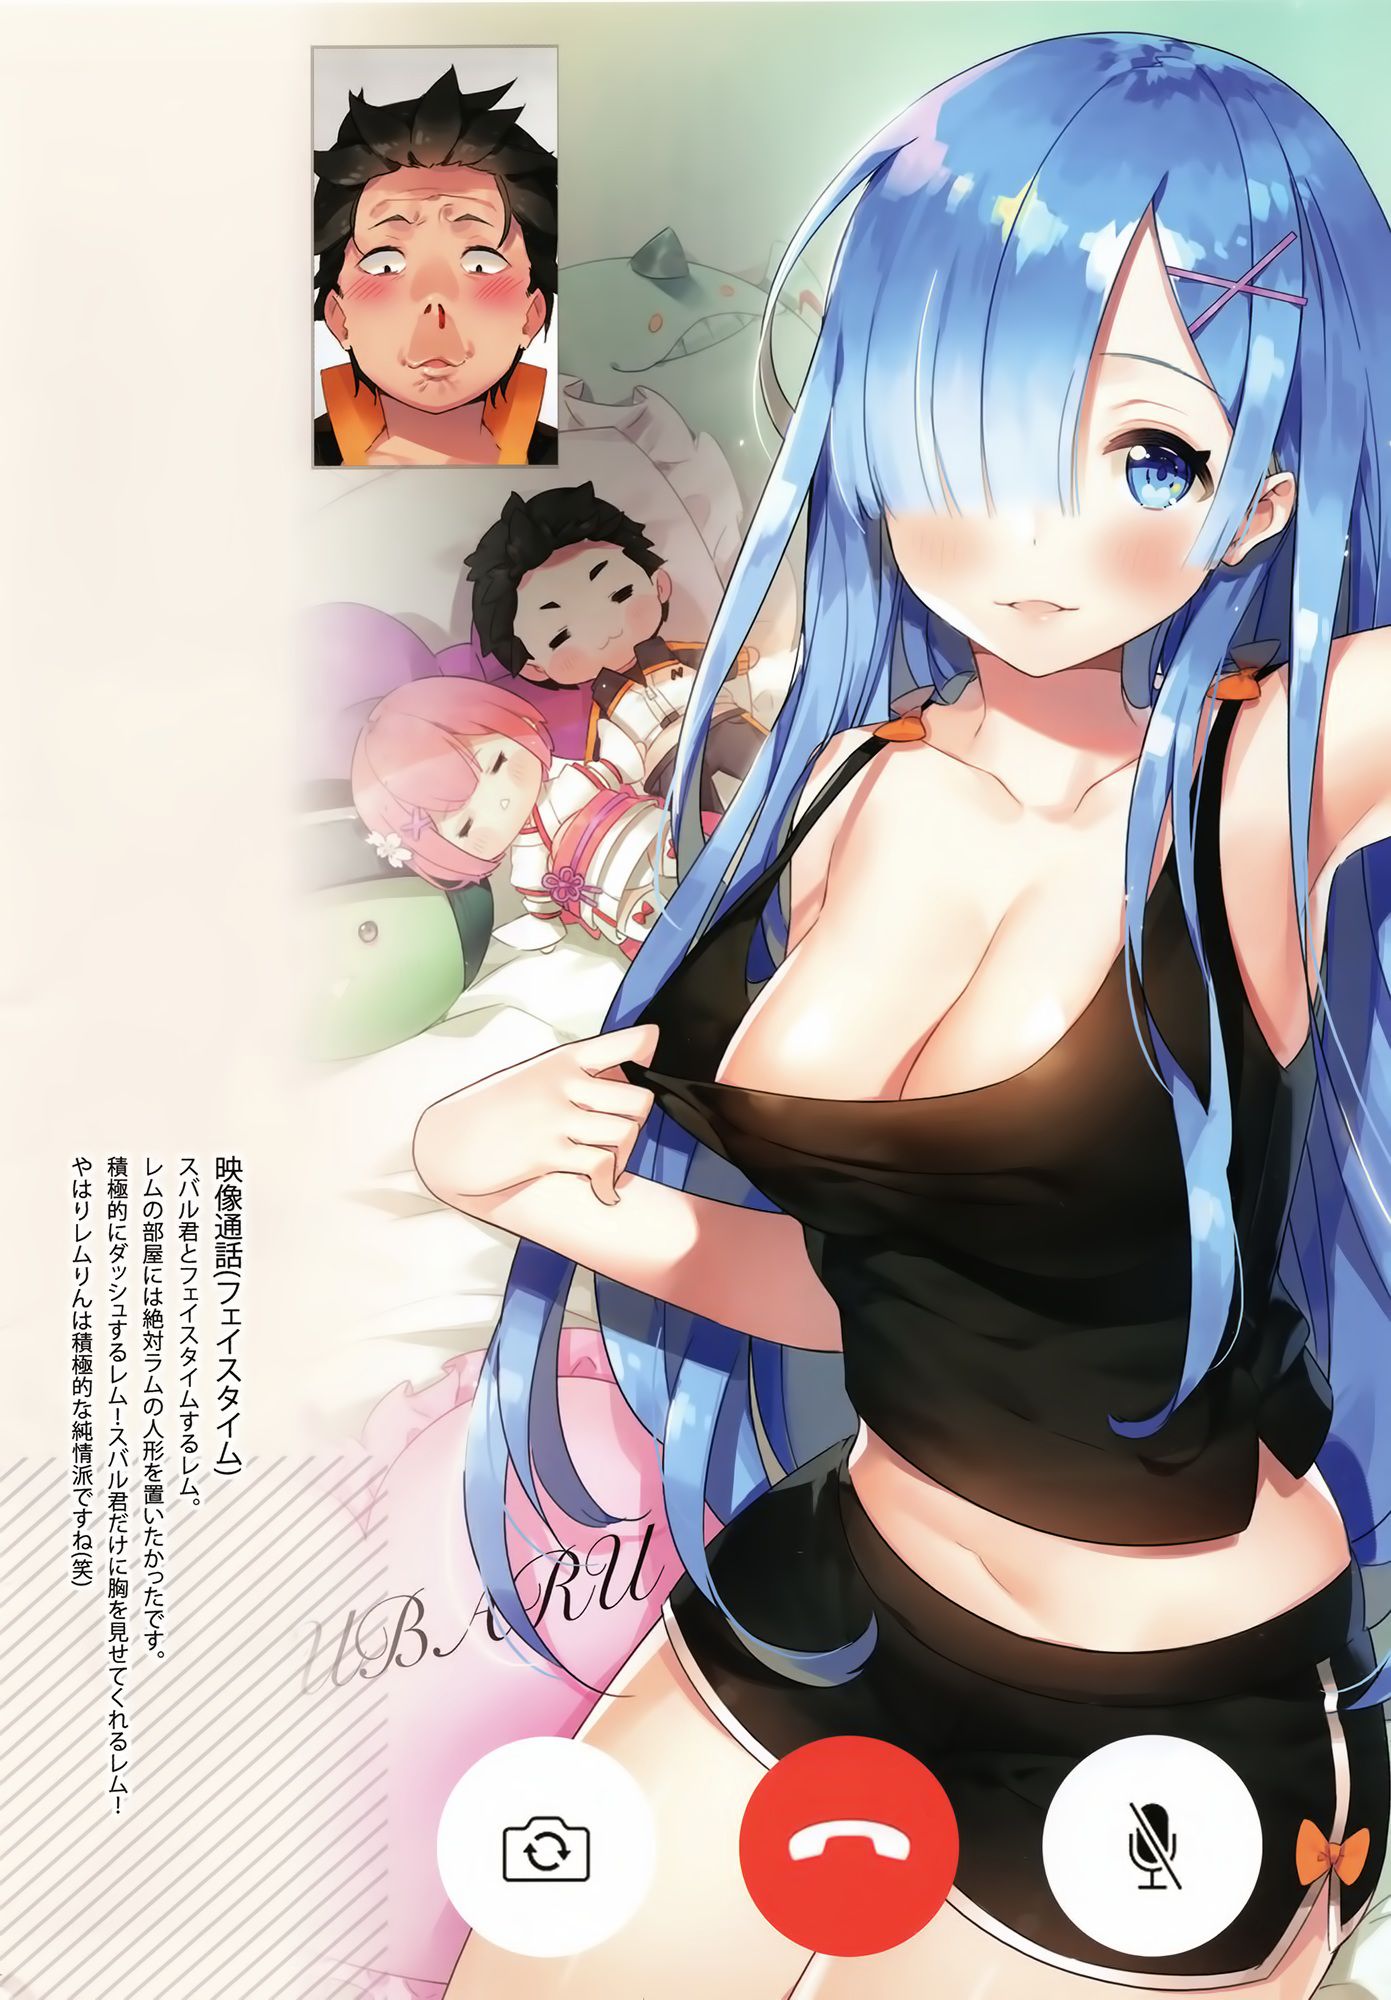 Rezero's Oni Kawaii Erotica Image Summary. vol.5 6